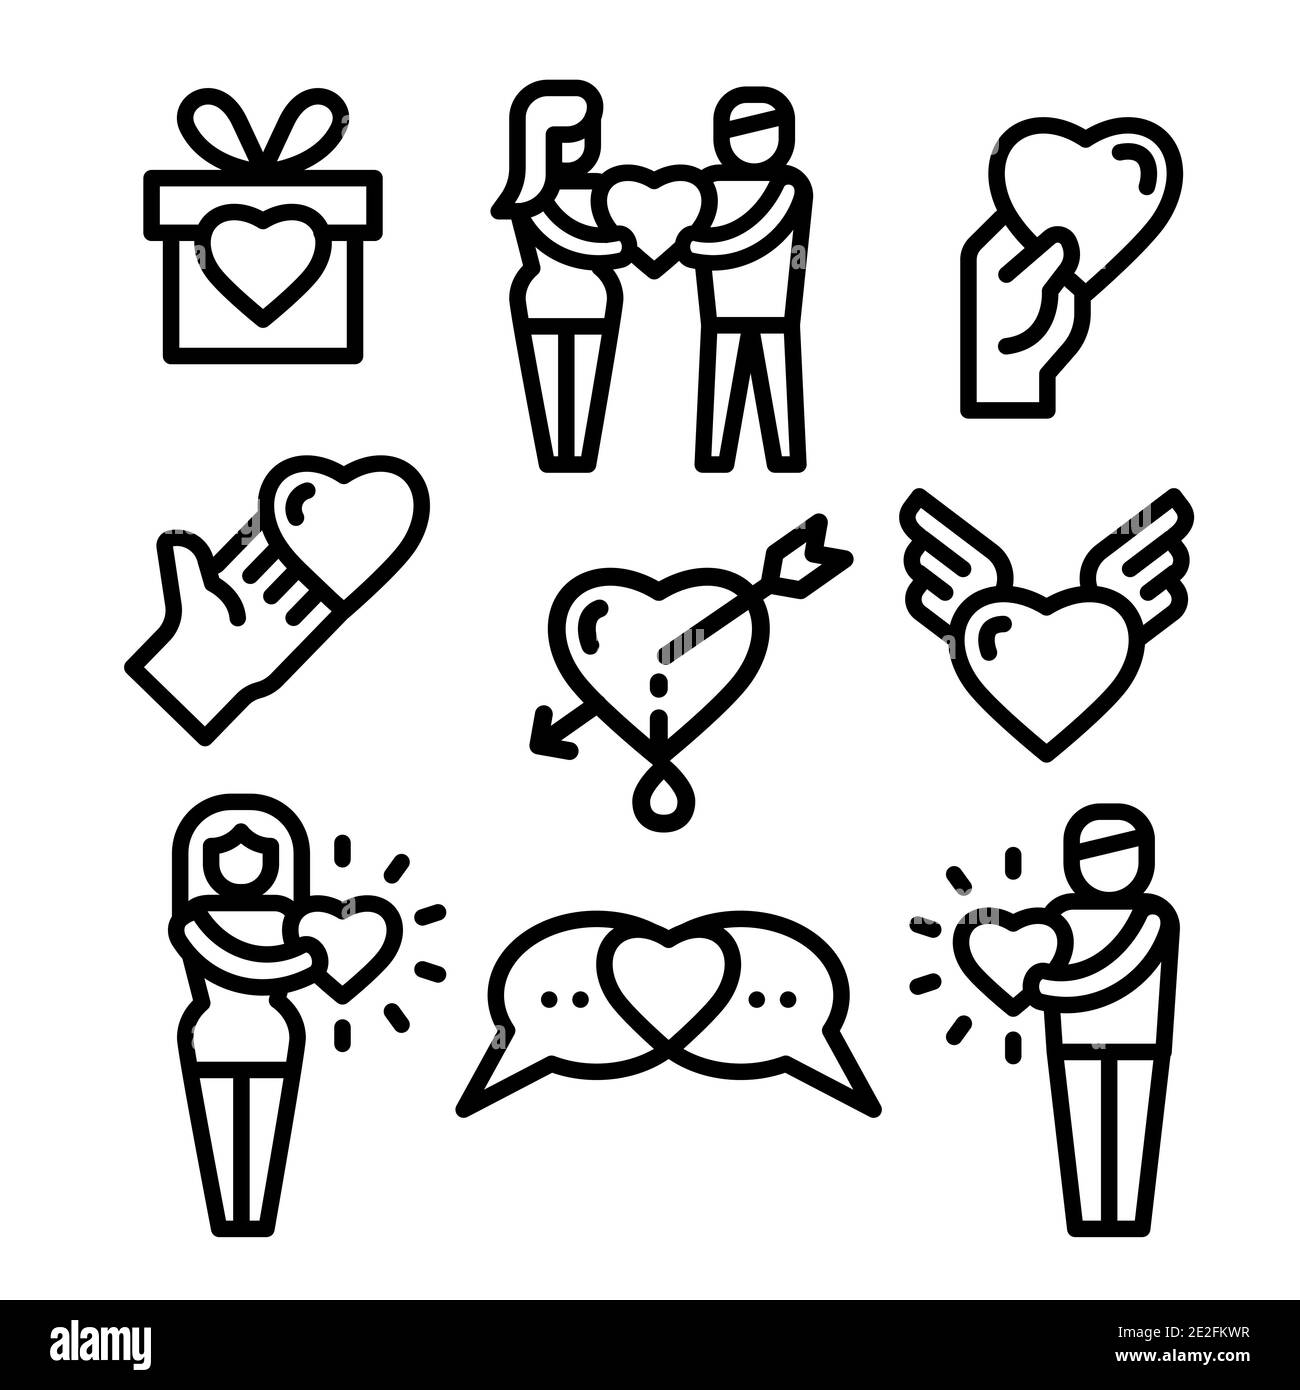 Ensemble linéaire des icônes d'amitié et d'amour Image Vectorielle Stock -  Alamy